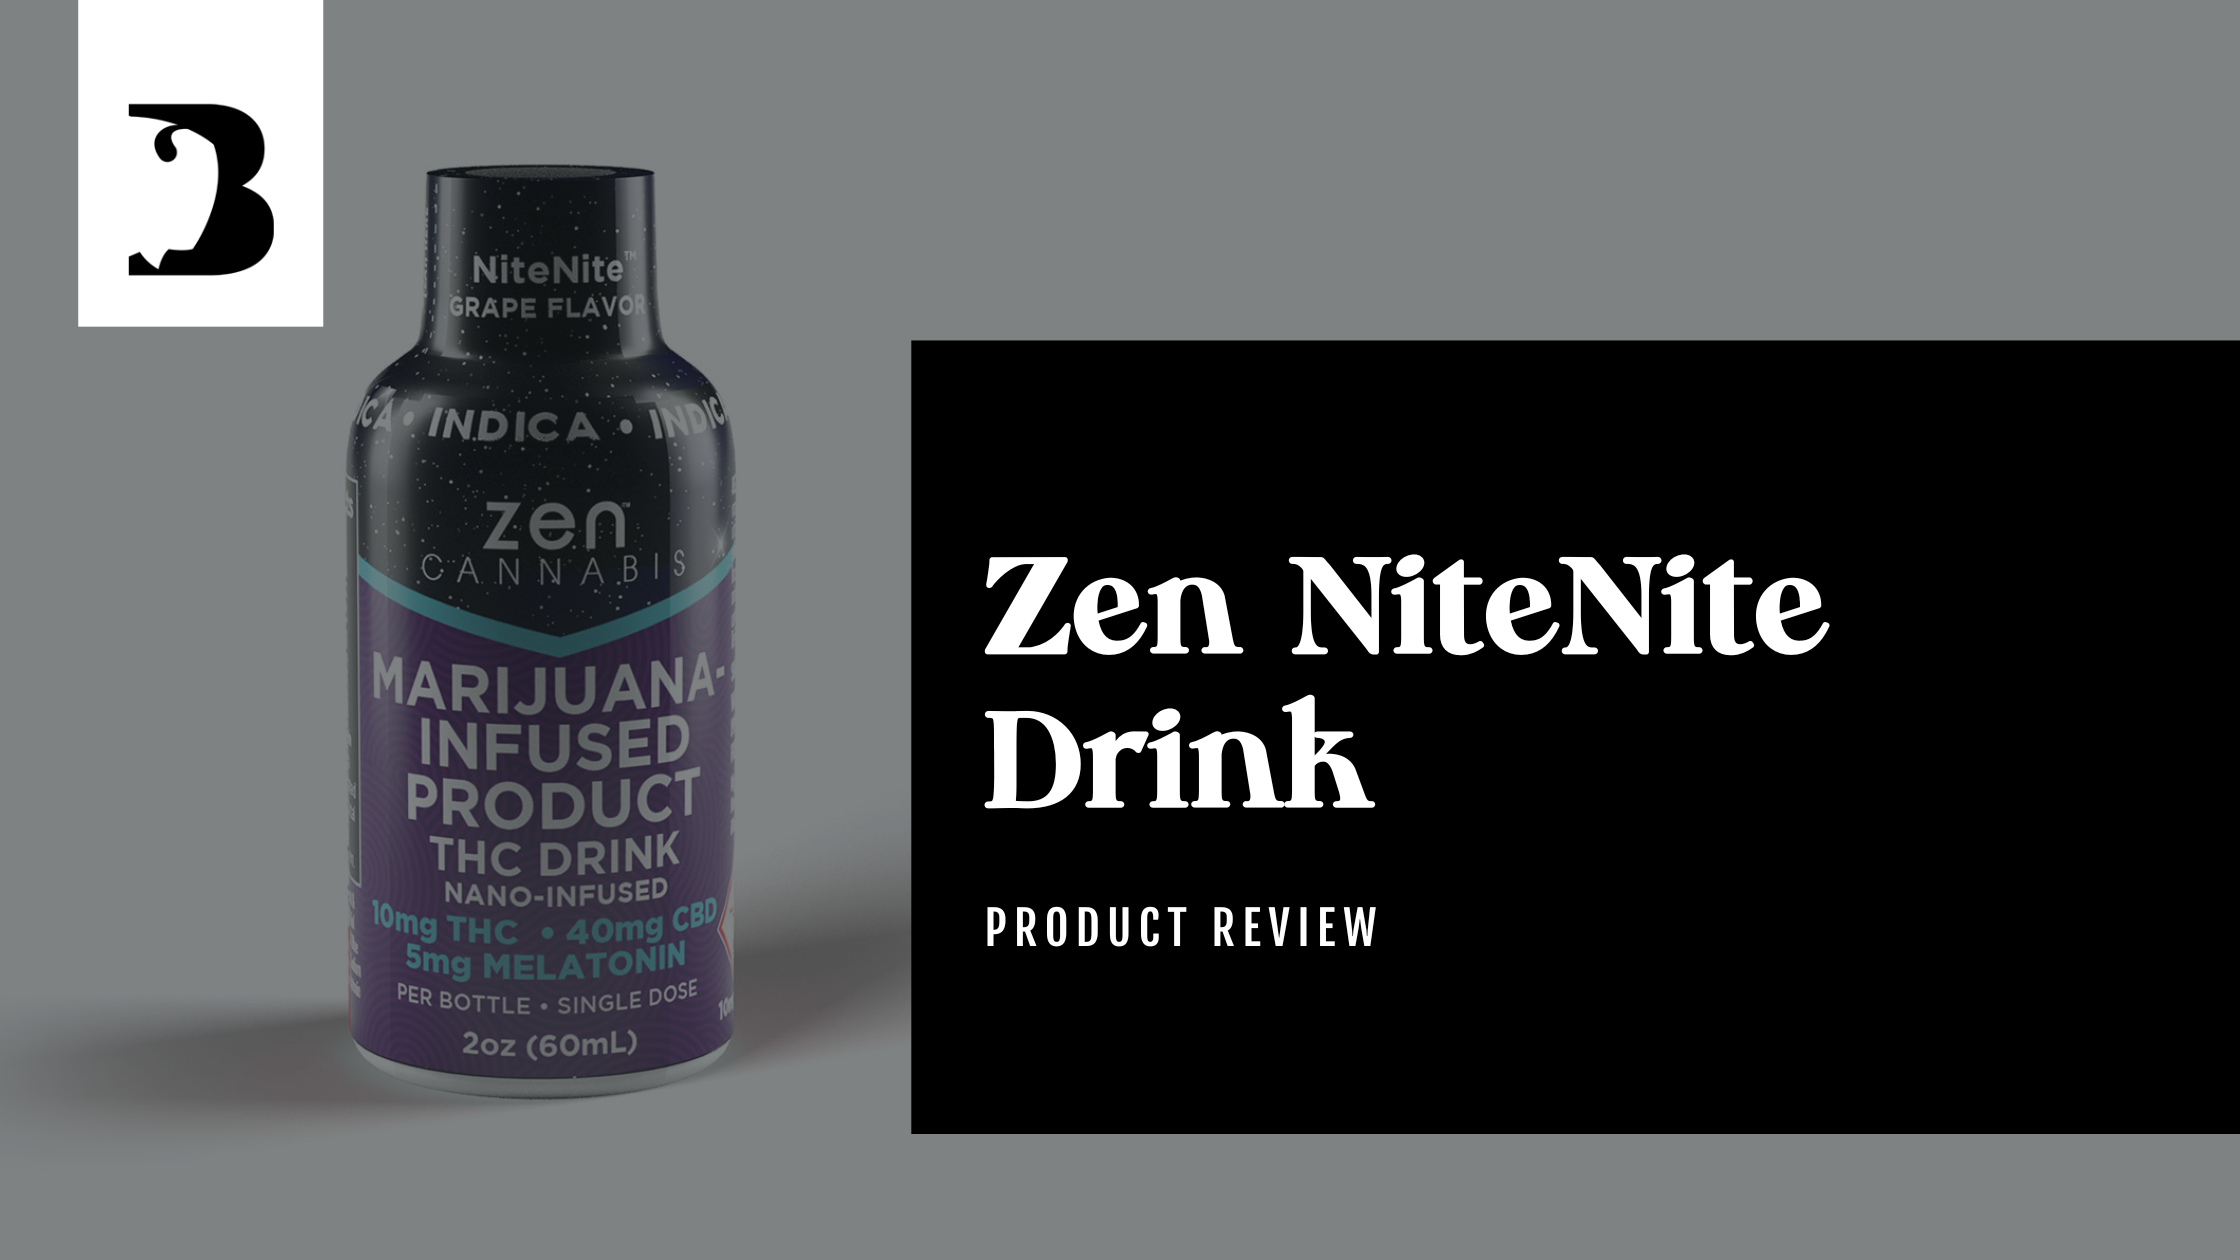 Marijuana Infused Product Zen NiteNite Drink